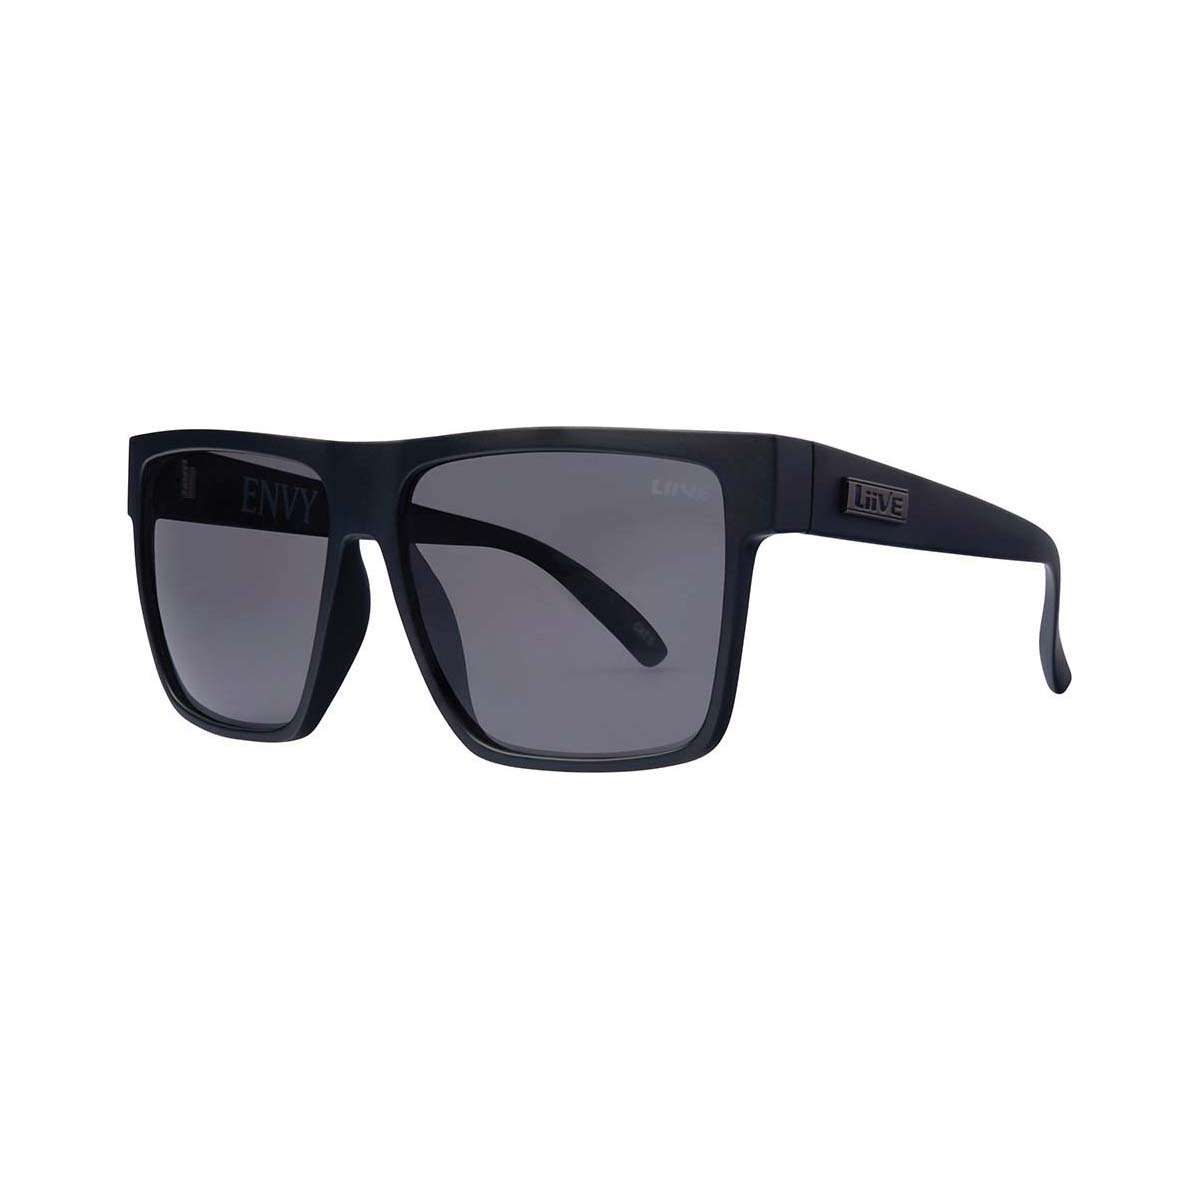 Liive Men's Envy Sunglasses Matt Black with Grey Lens